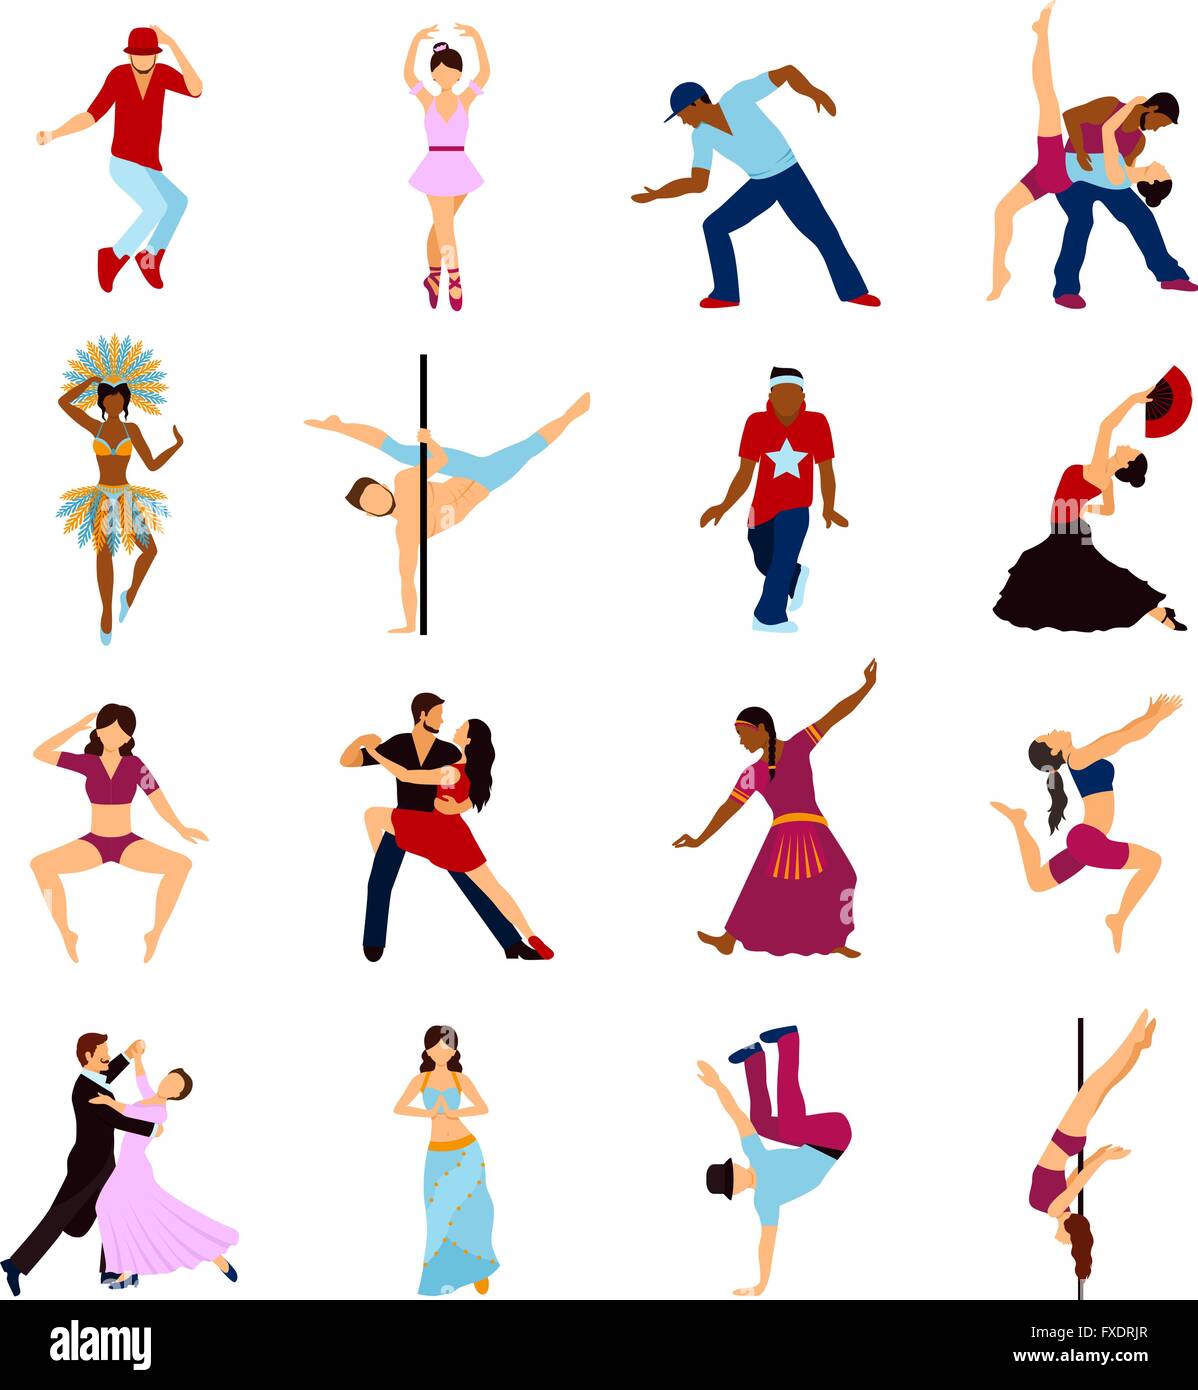 Persone che ballano insieme Illustrazione Vettoriale